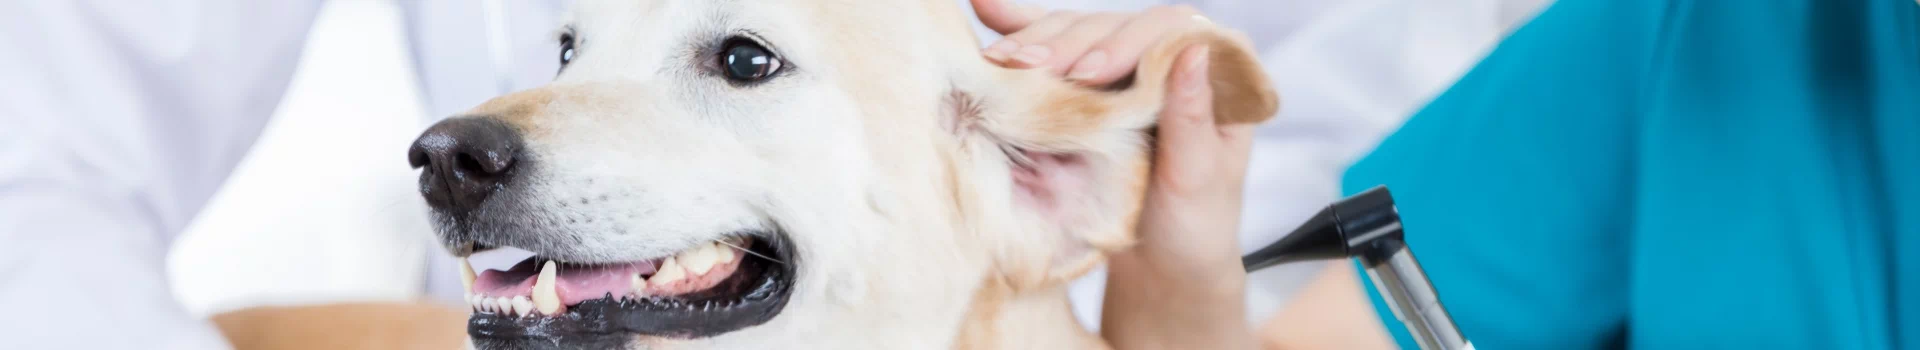 badanie ucha psa